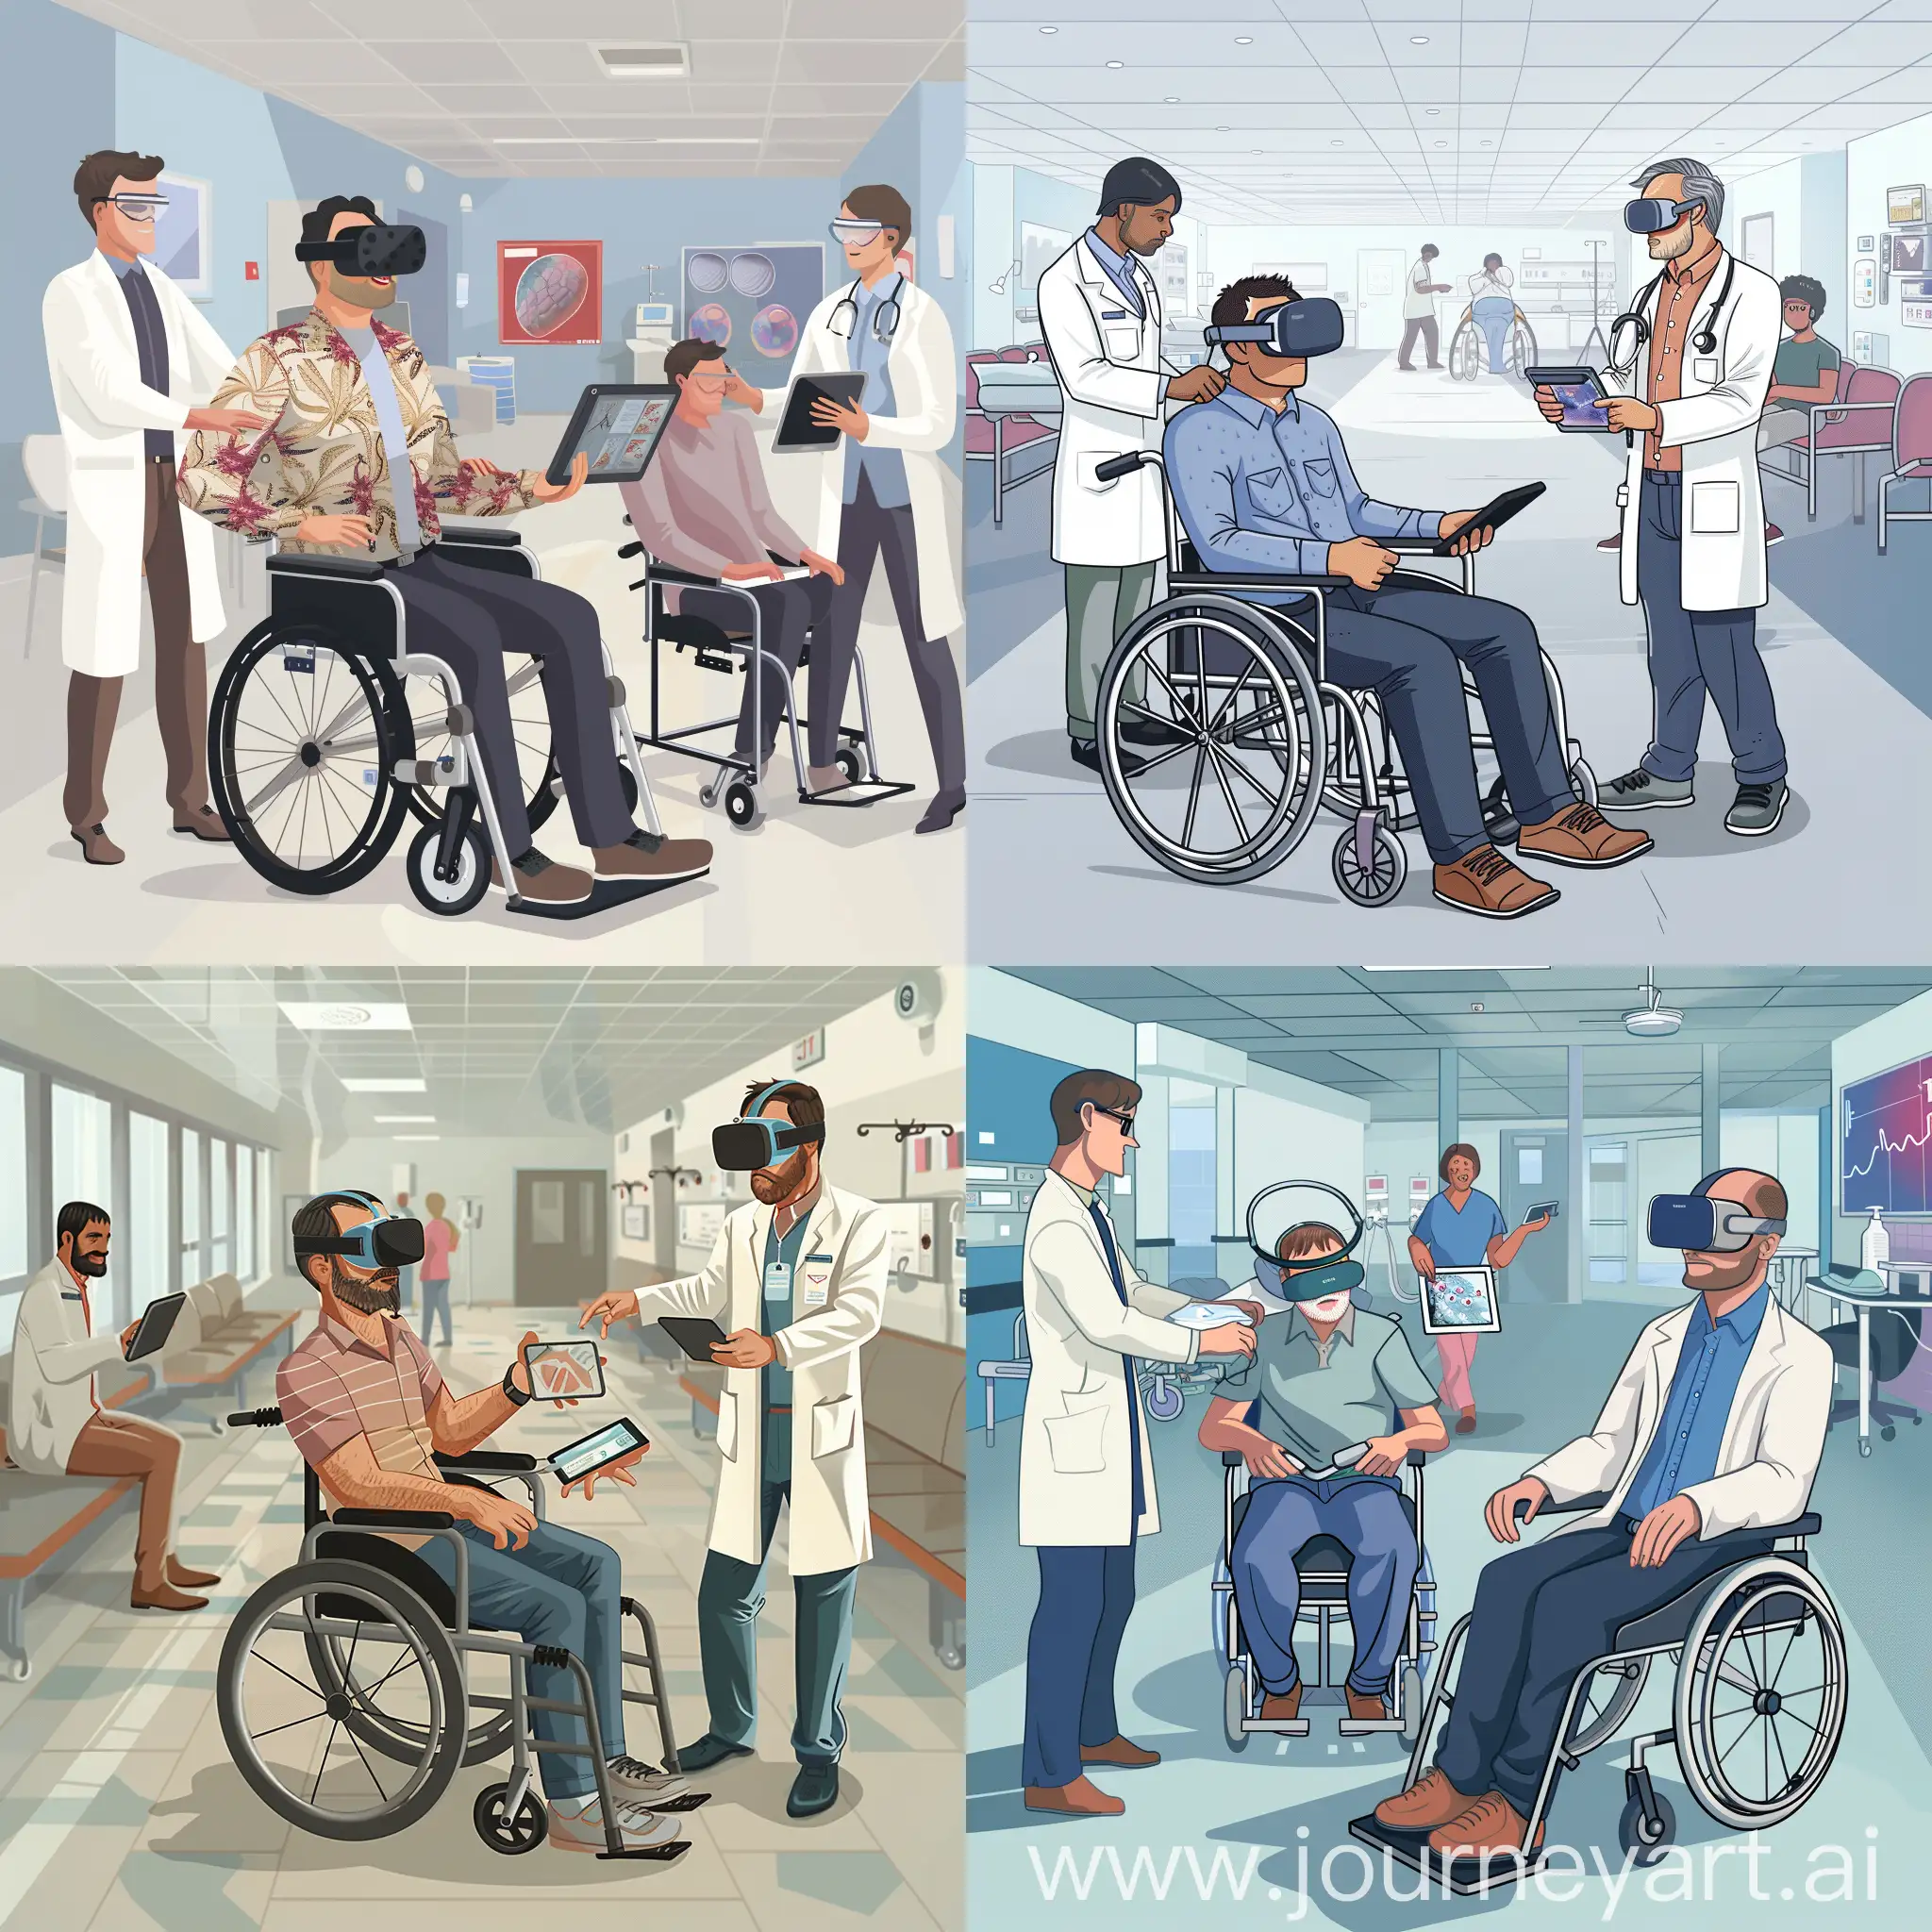 изобрази мне мужчину сидящего в кресле для инвалида в больнице, использующего VR-гарнитуру и планшет, а рядом с ним врача, помогающего разобраться с техникой